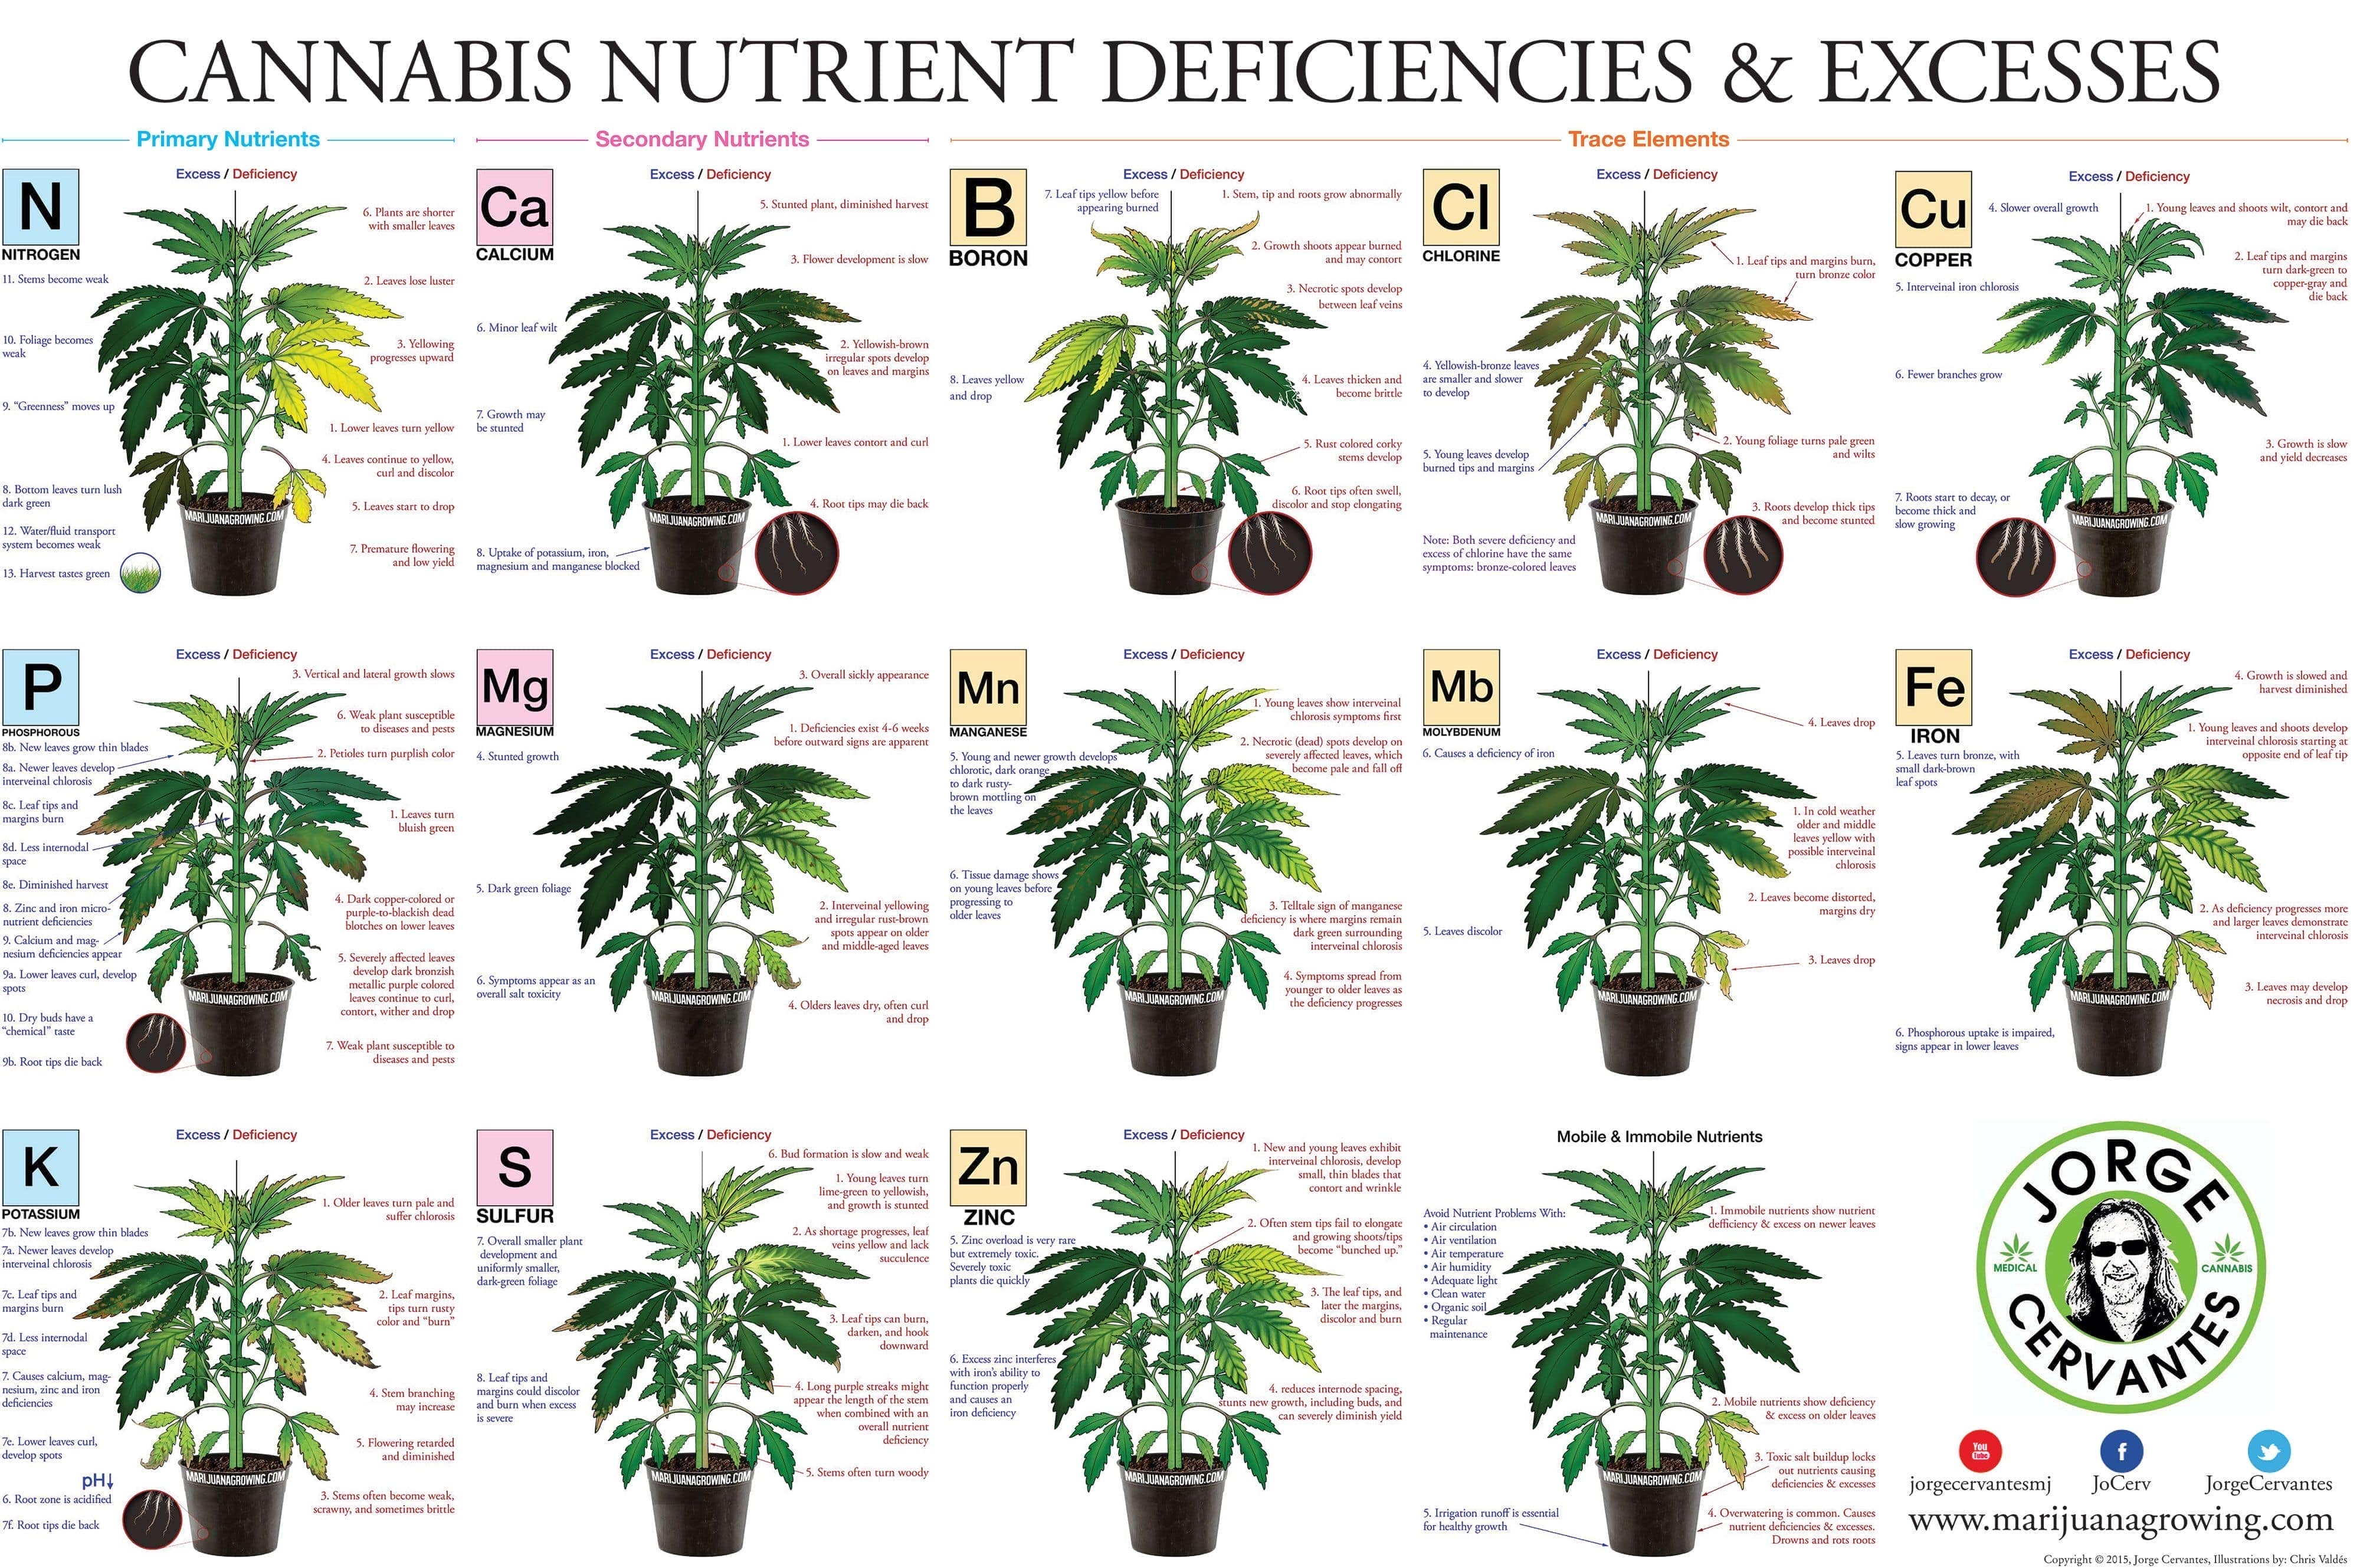 Tabla de todos los excesos y deficiencias en cannabis